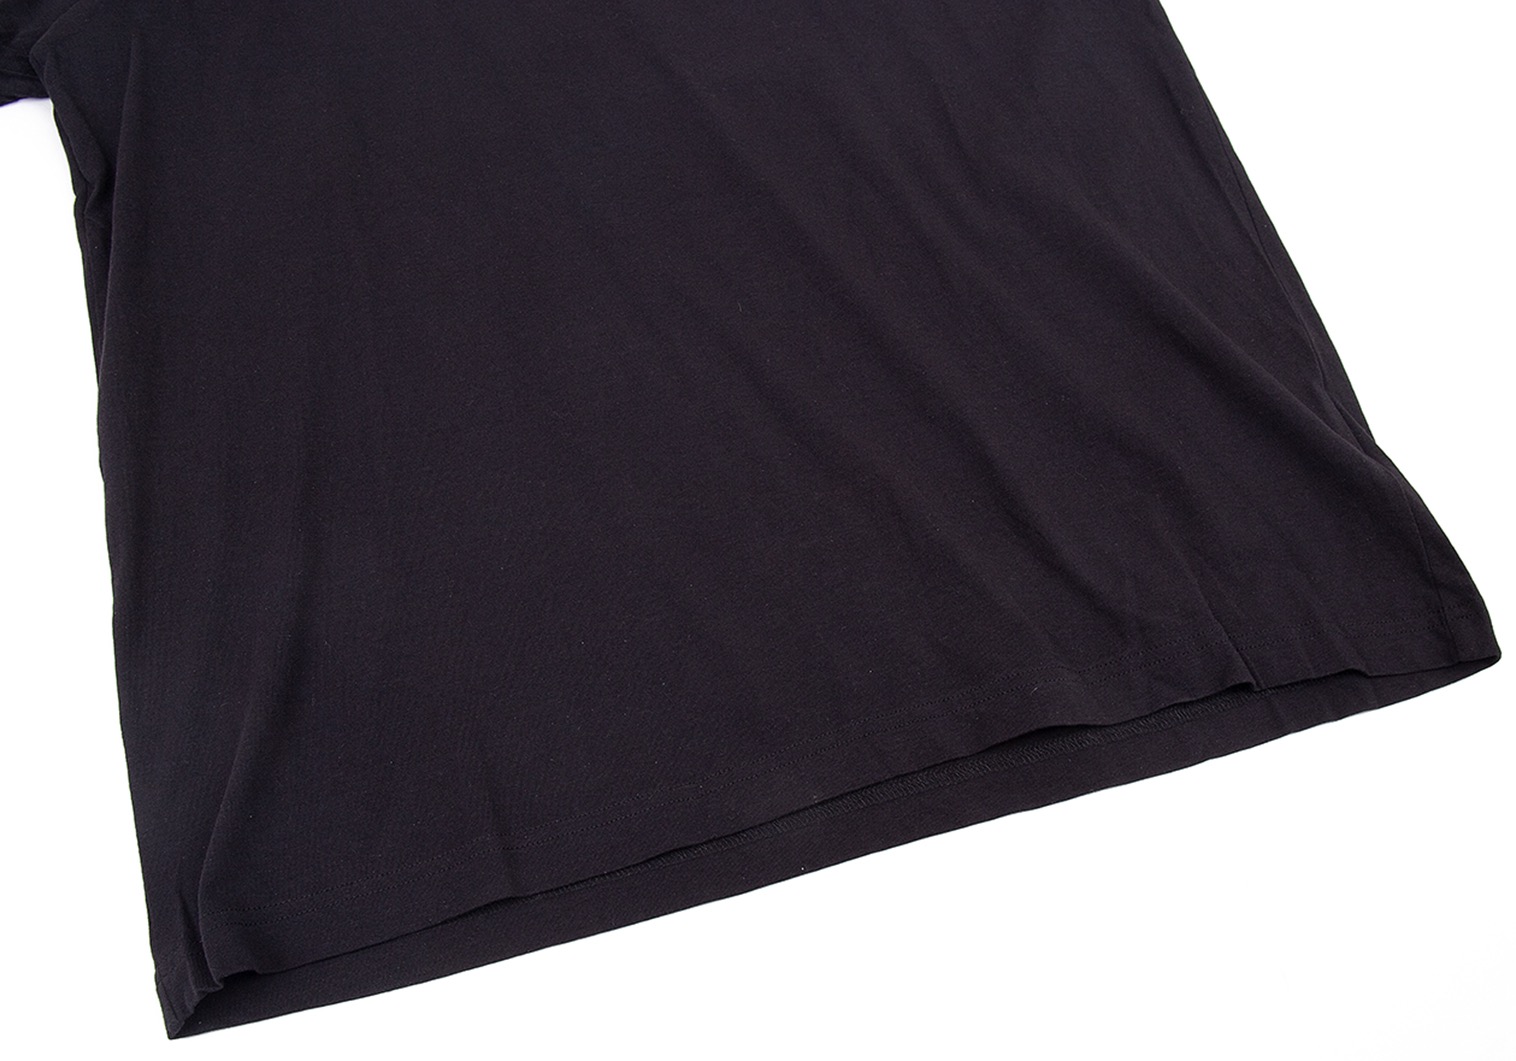 ワイスリーY-3 レタリングプリントTシャツ 黒2XL